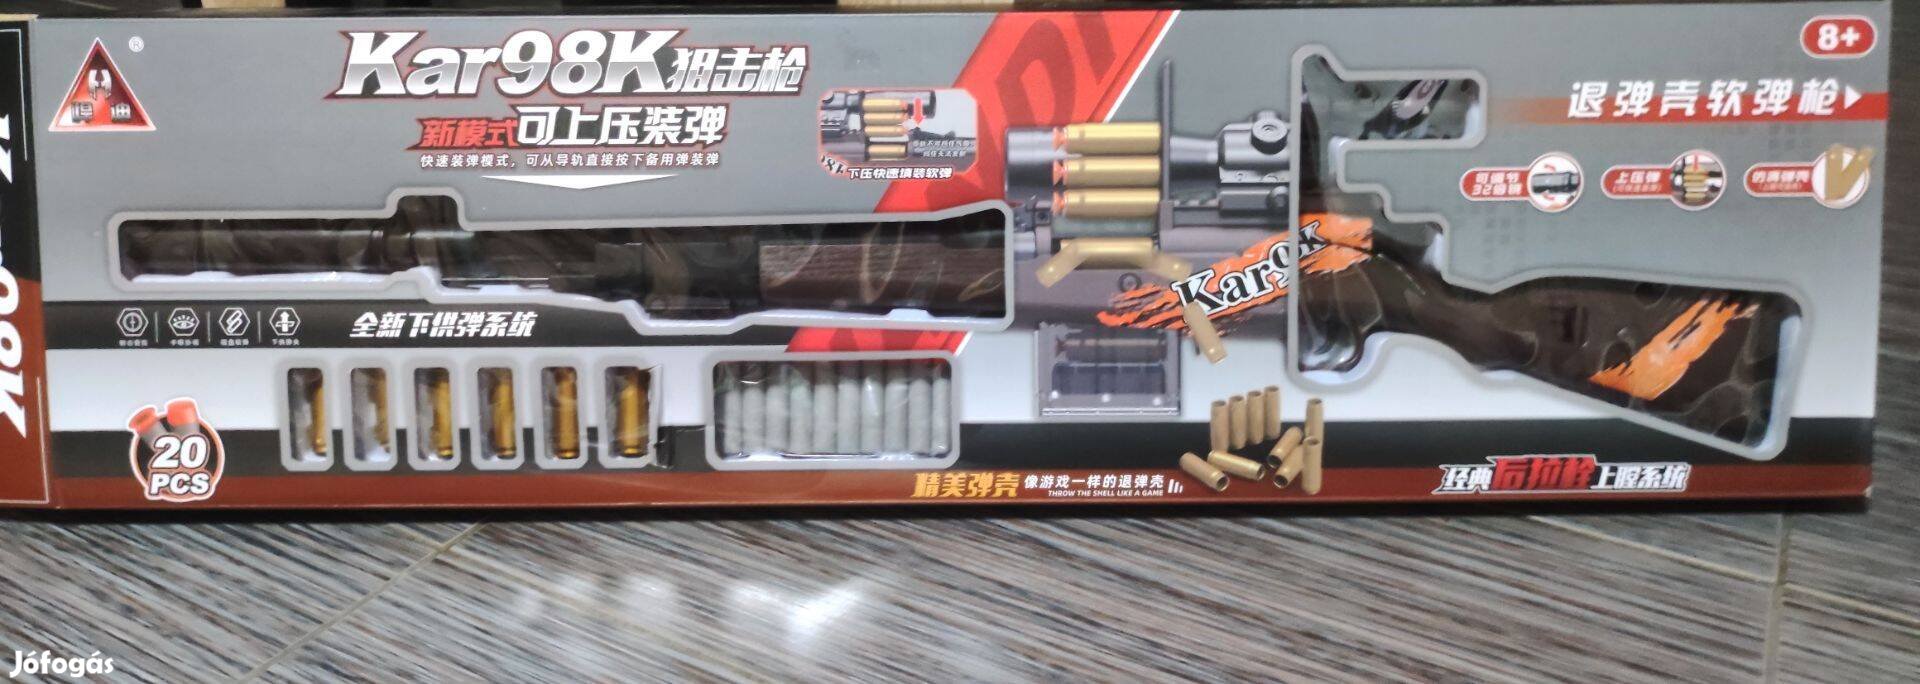 Új Kar98K Nerf puska szivacslövő fegyver szivacslövő puska